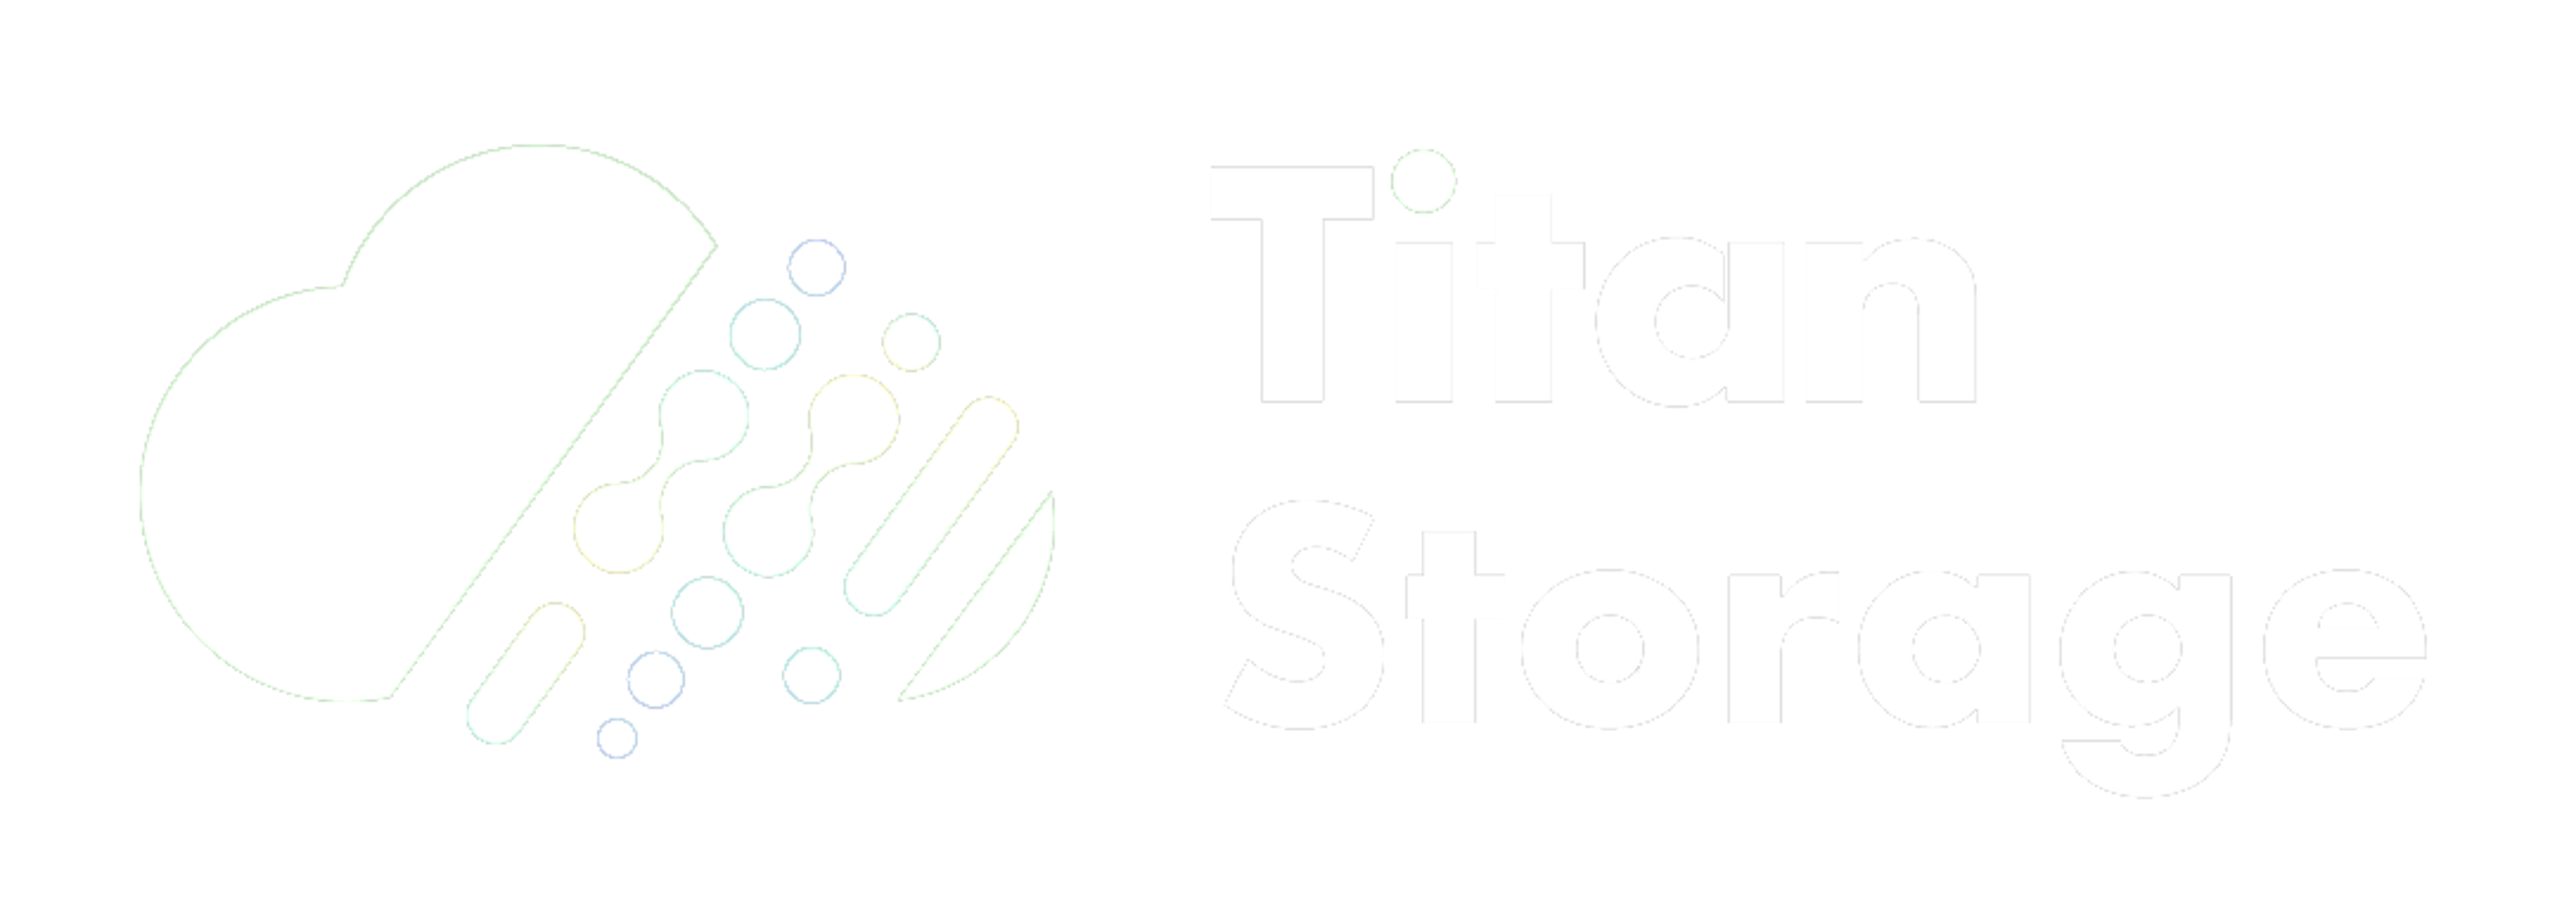 Titan Storage Logo